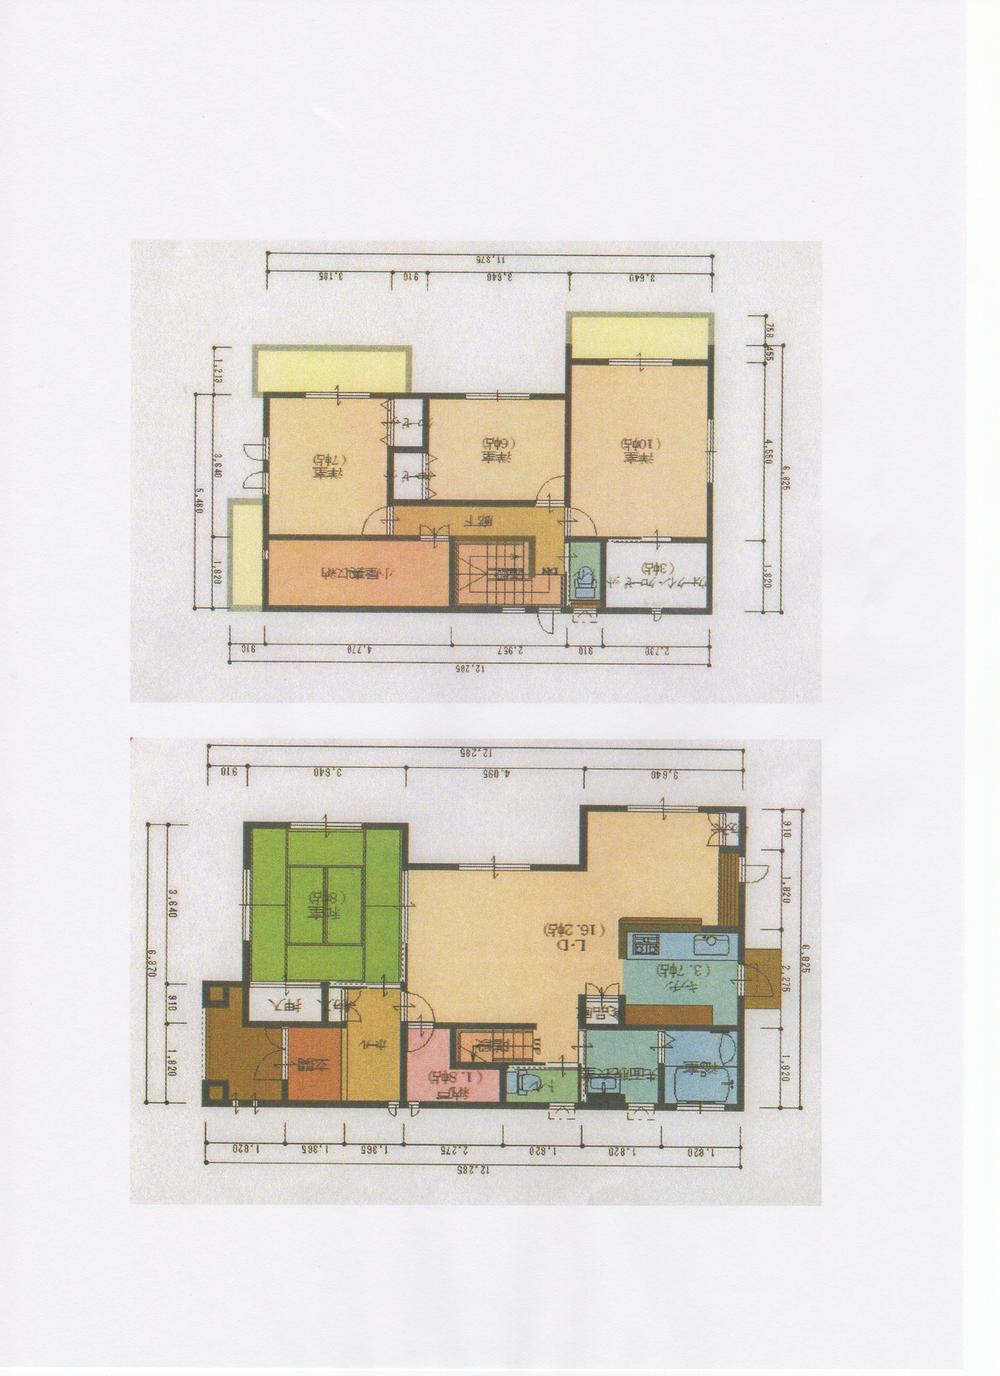 Floor plan. 37,800,000 yen, 4LDK, Land area 213.02 sq m , Building area 125.24 sq m 1 floor, Second floor